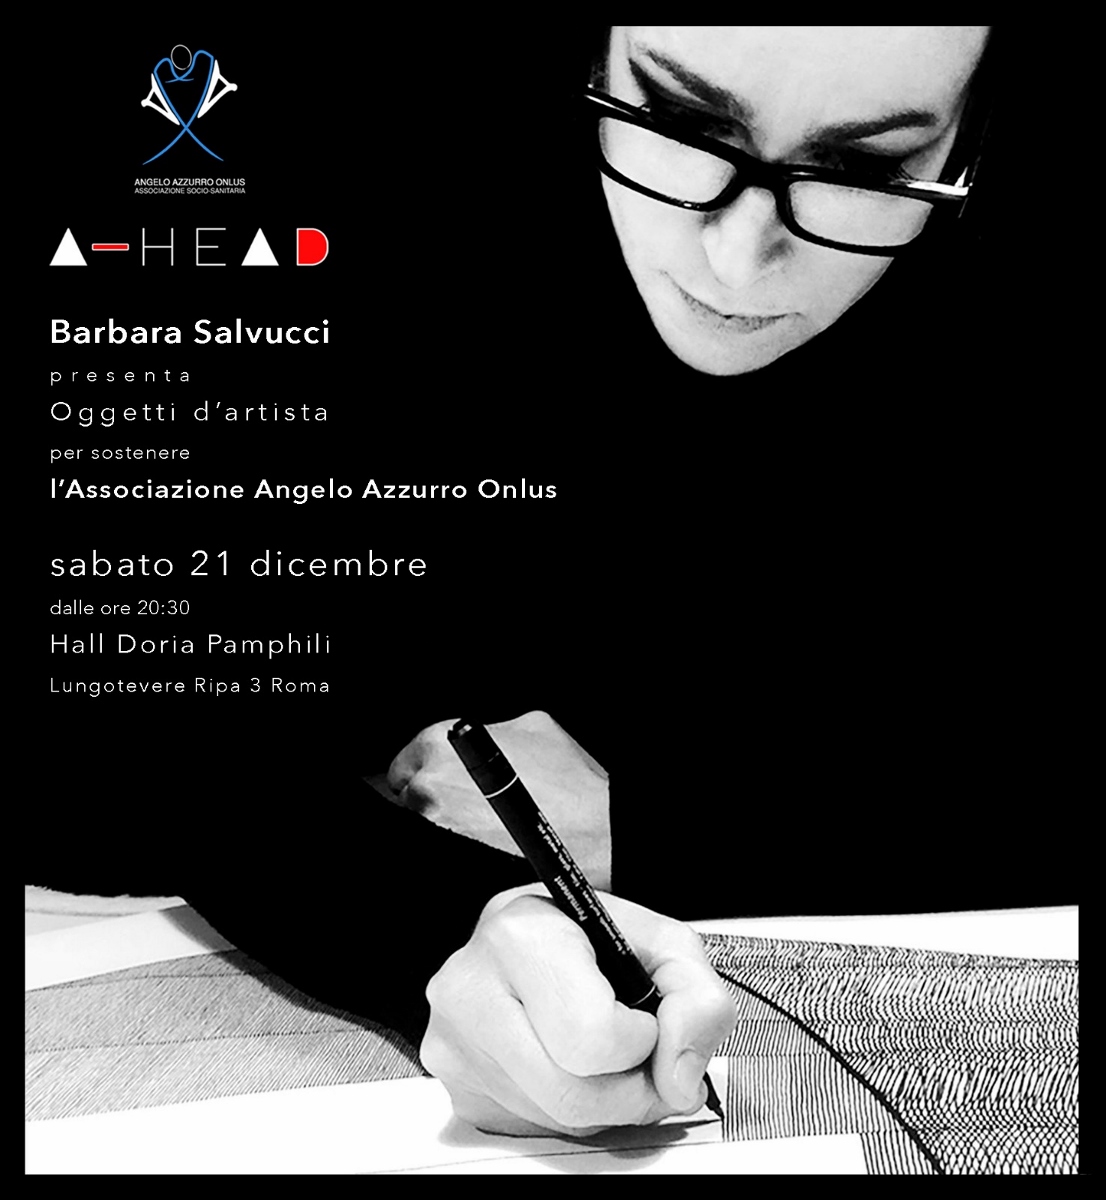 Progetto A-HEAD di Angelo Azzurro Onlus - Oggetti d’artista